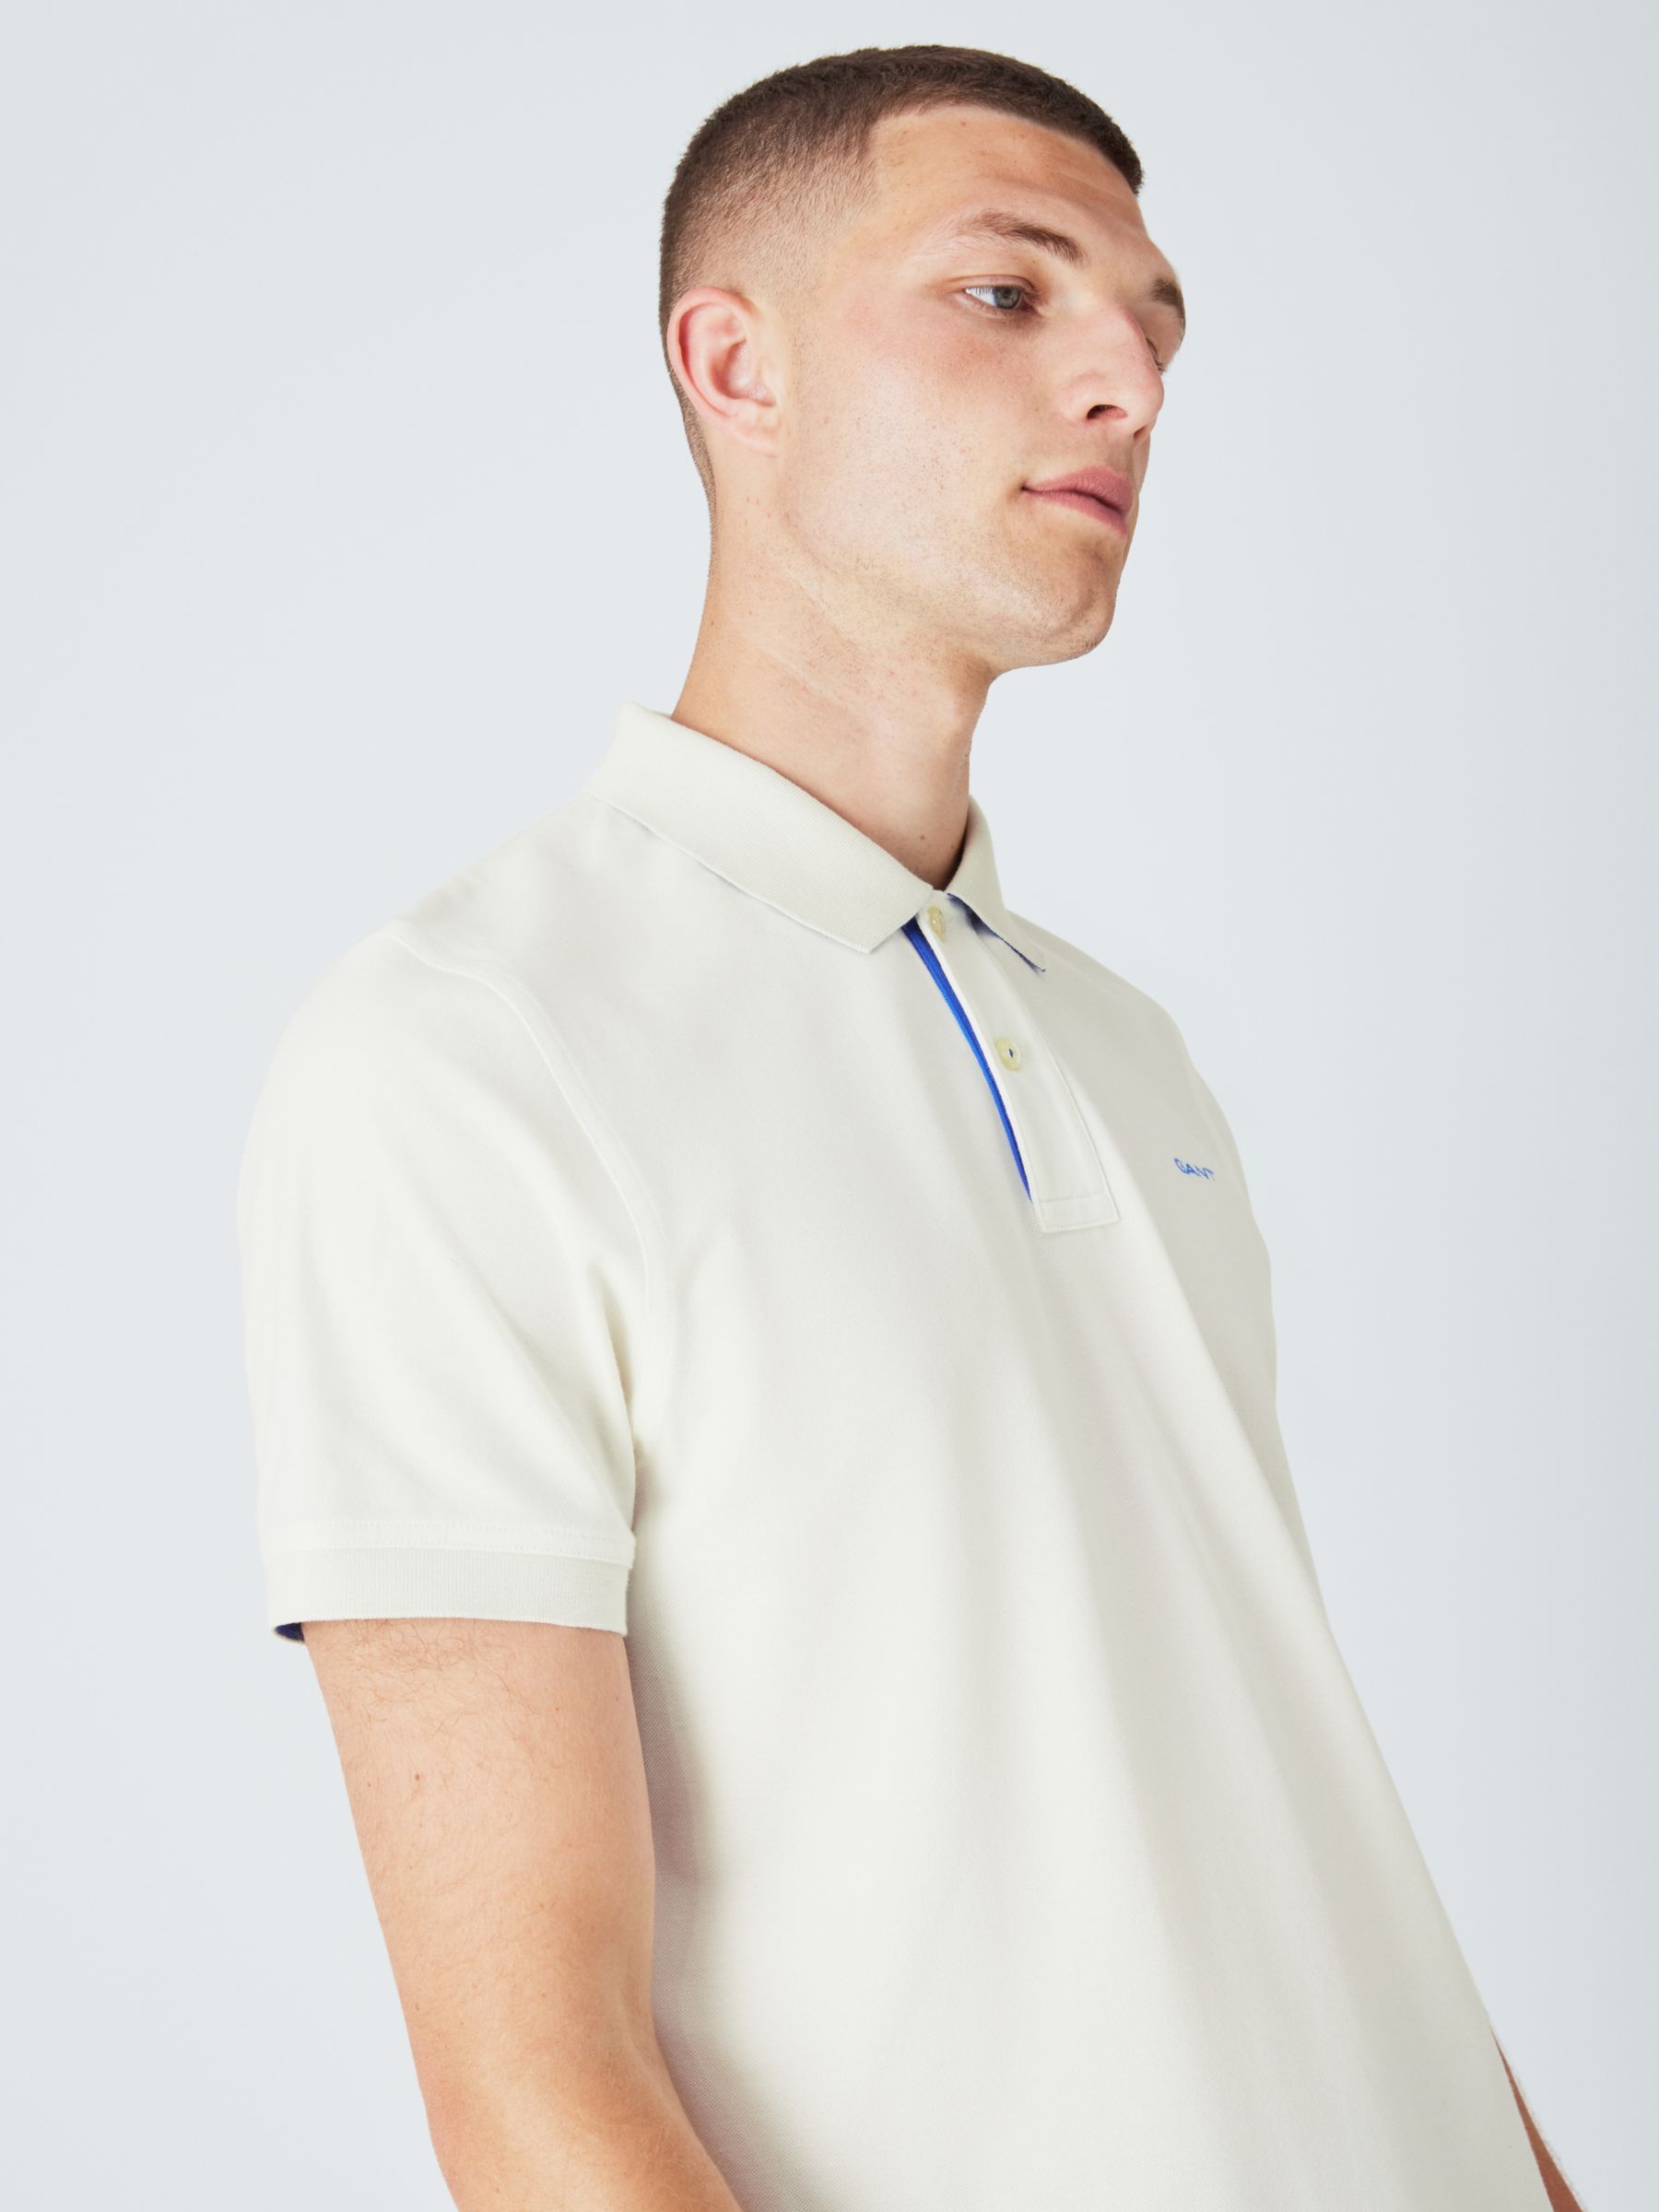 GANT Regular Contrast Pique Polo Shirt, White, M